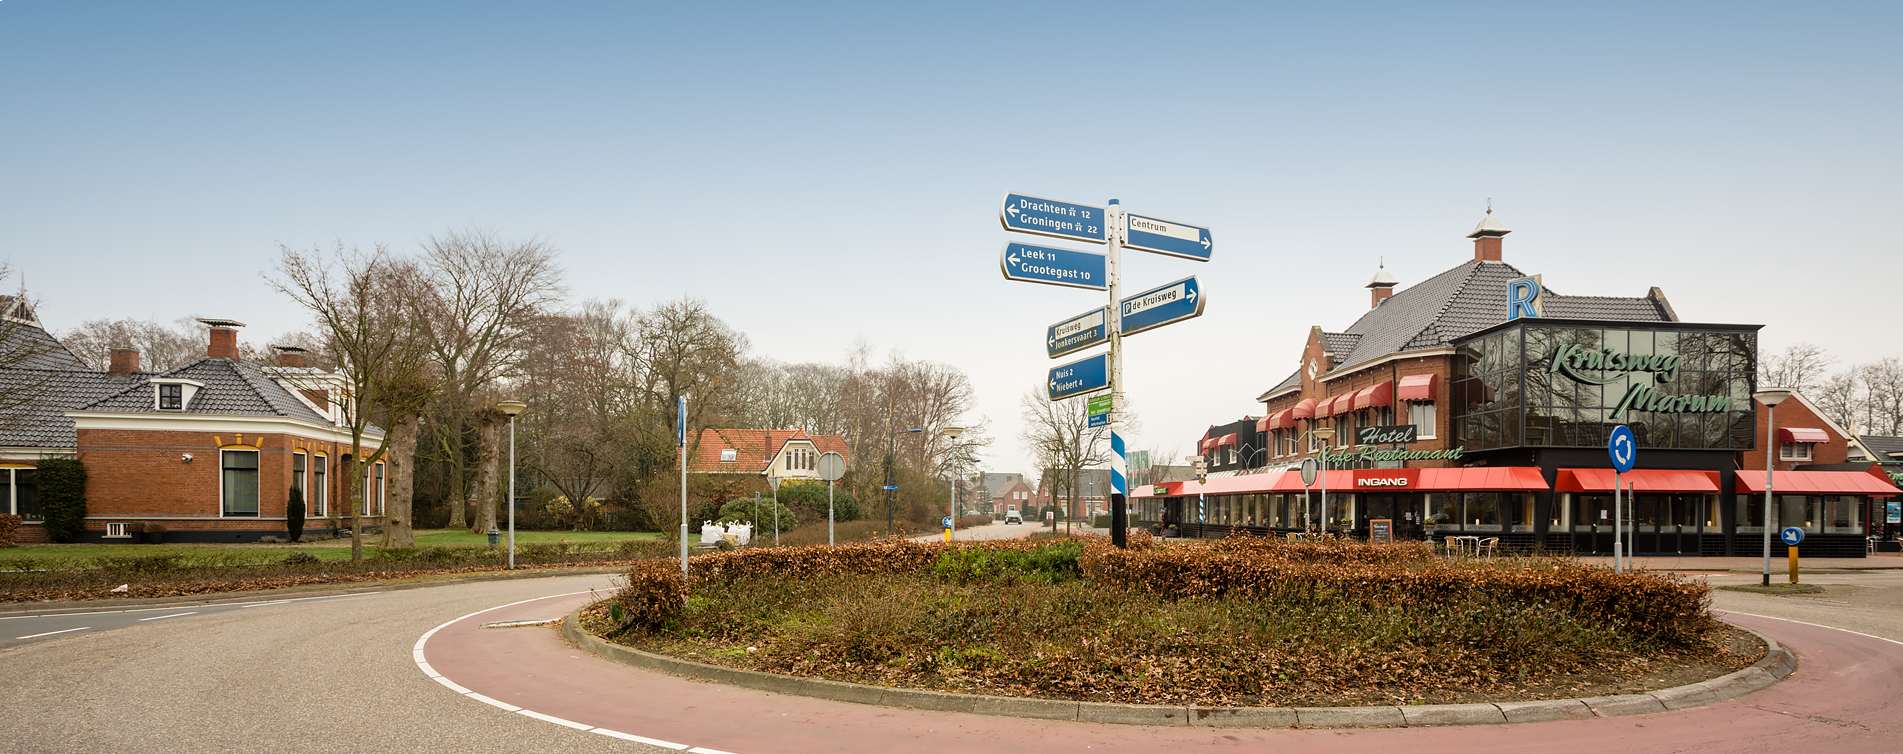 Hotel restaurant Kruisweg in Marum - Van Campen & Dijkstra